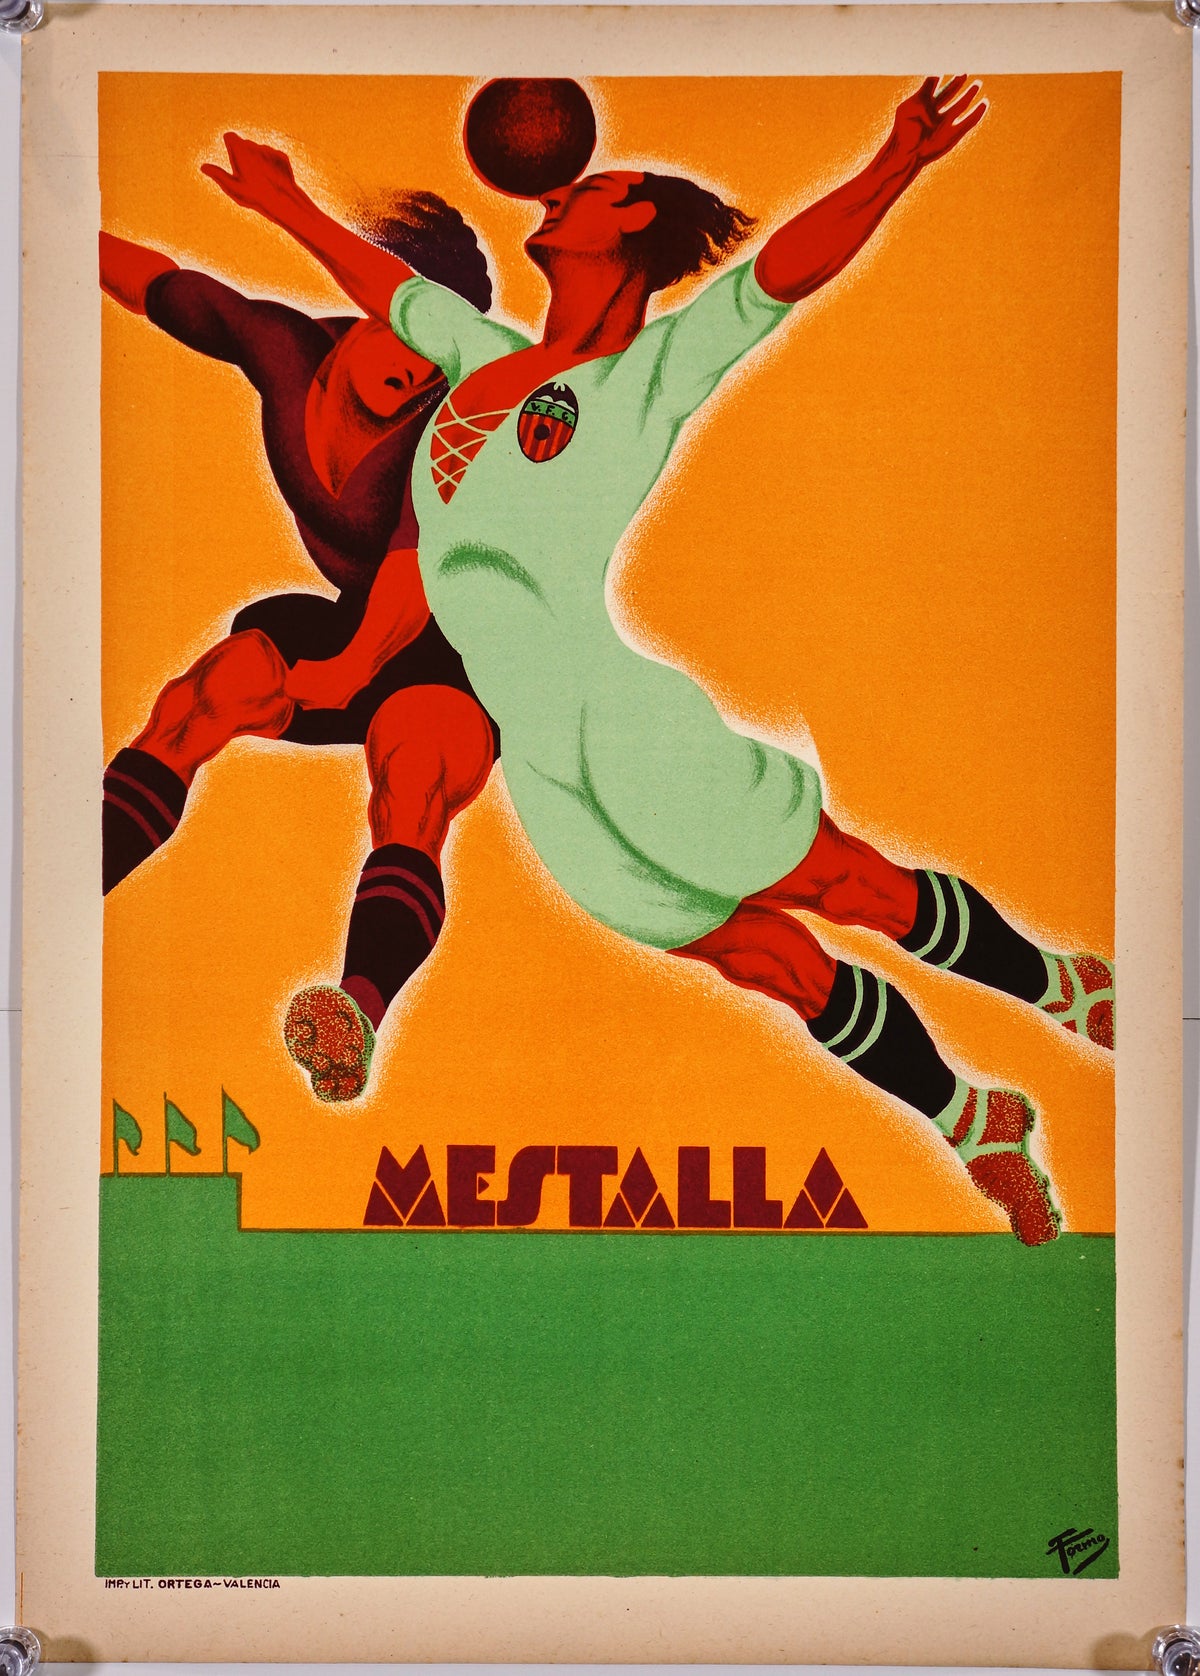 Estadio Mestalla Valencia - Authentic Vintage Poster